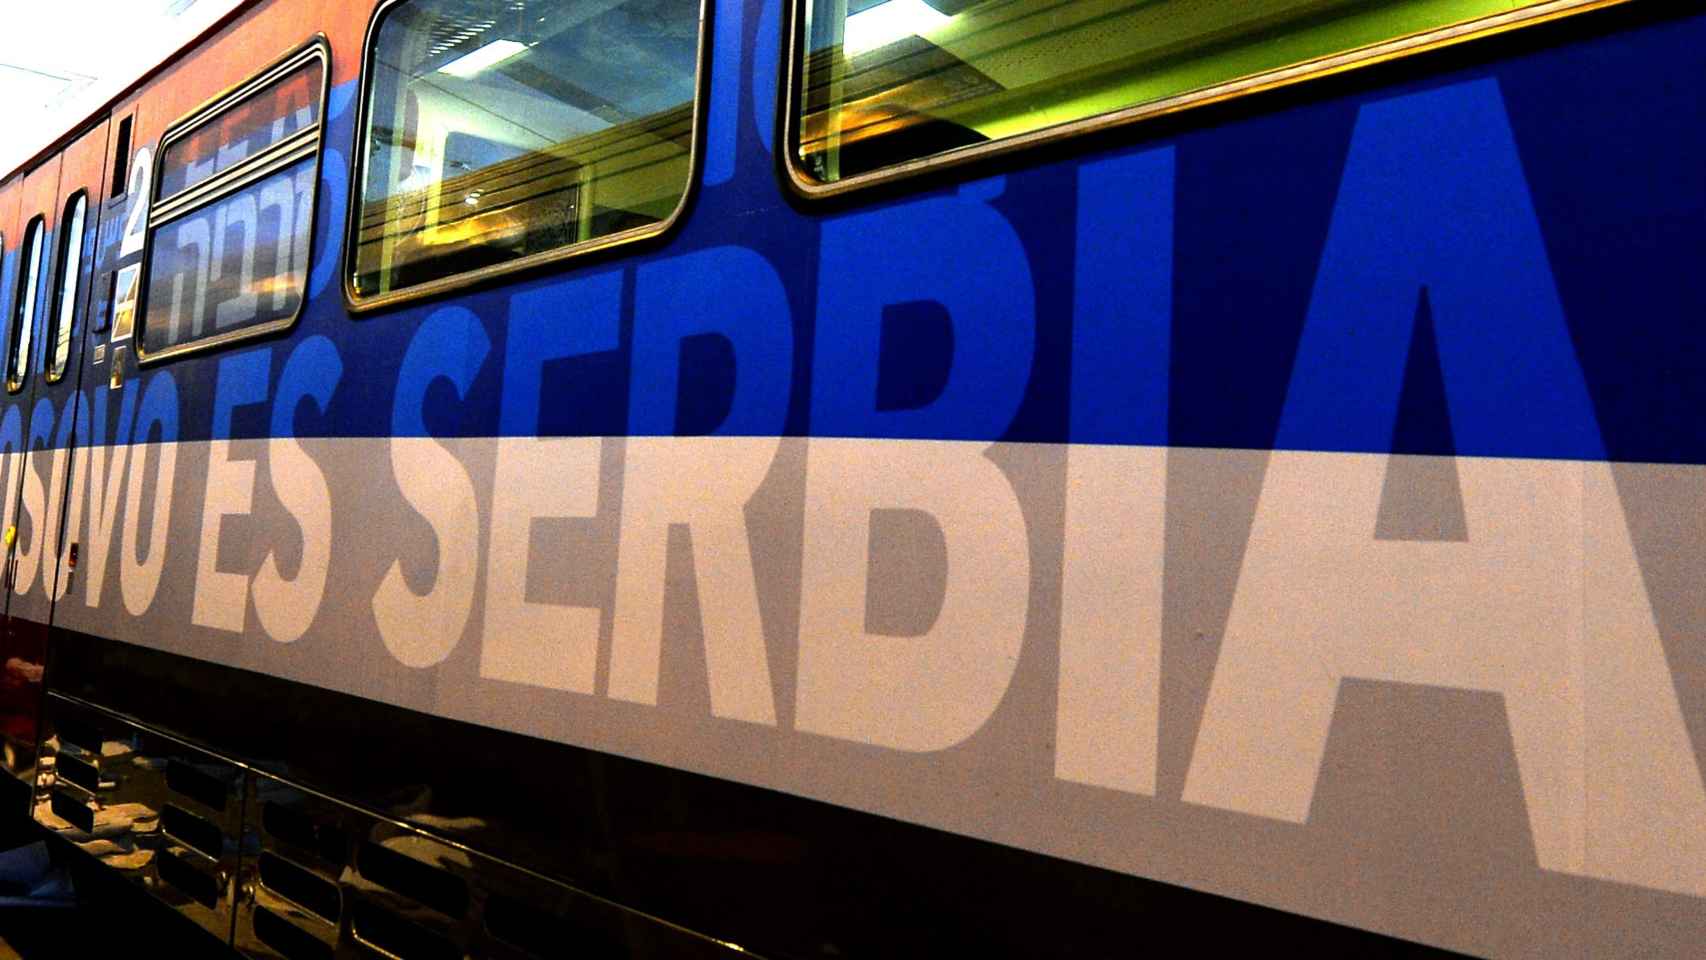 El tren contaba con la leyenda Kosovo es Serbia, también en español.